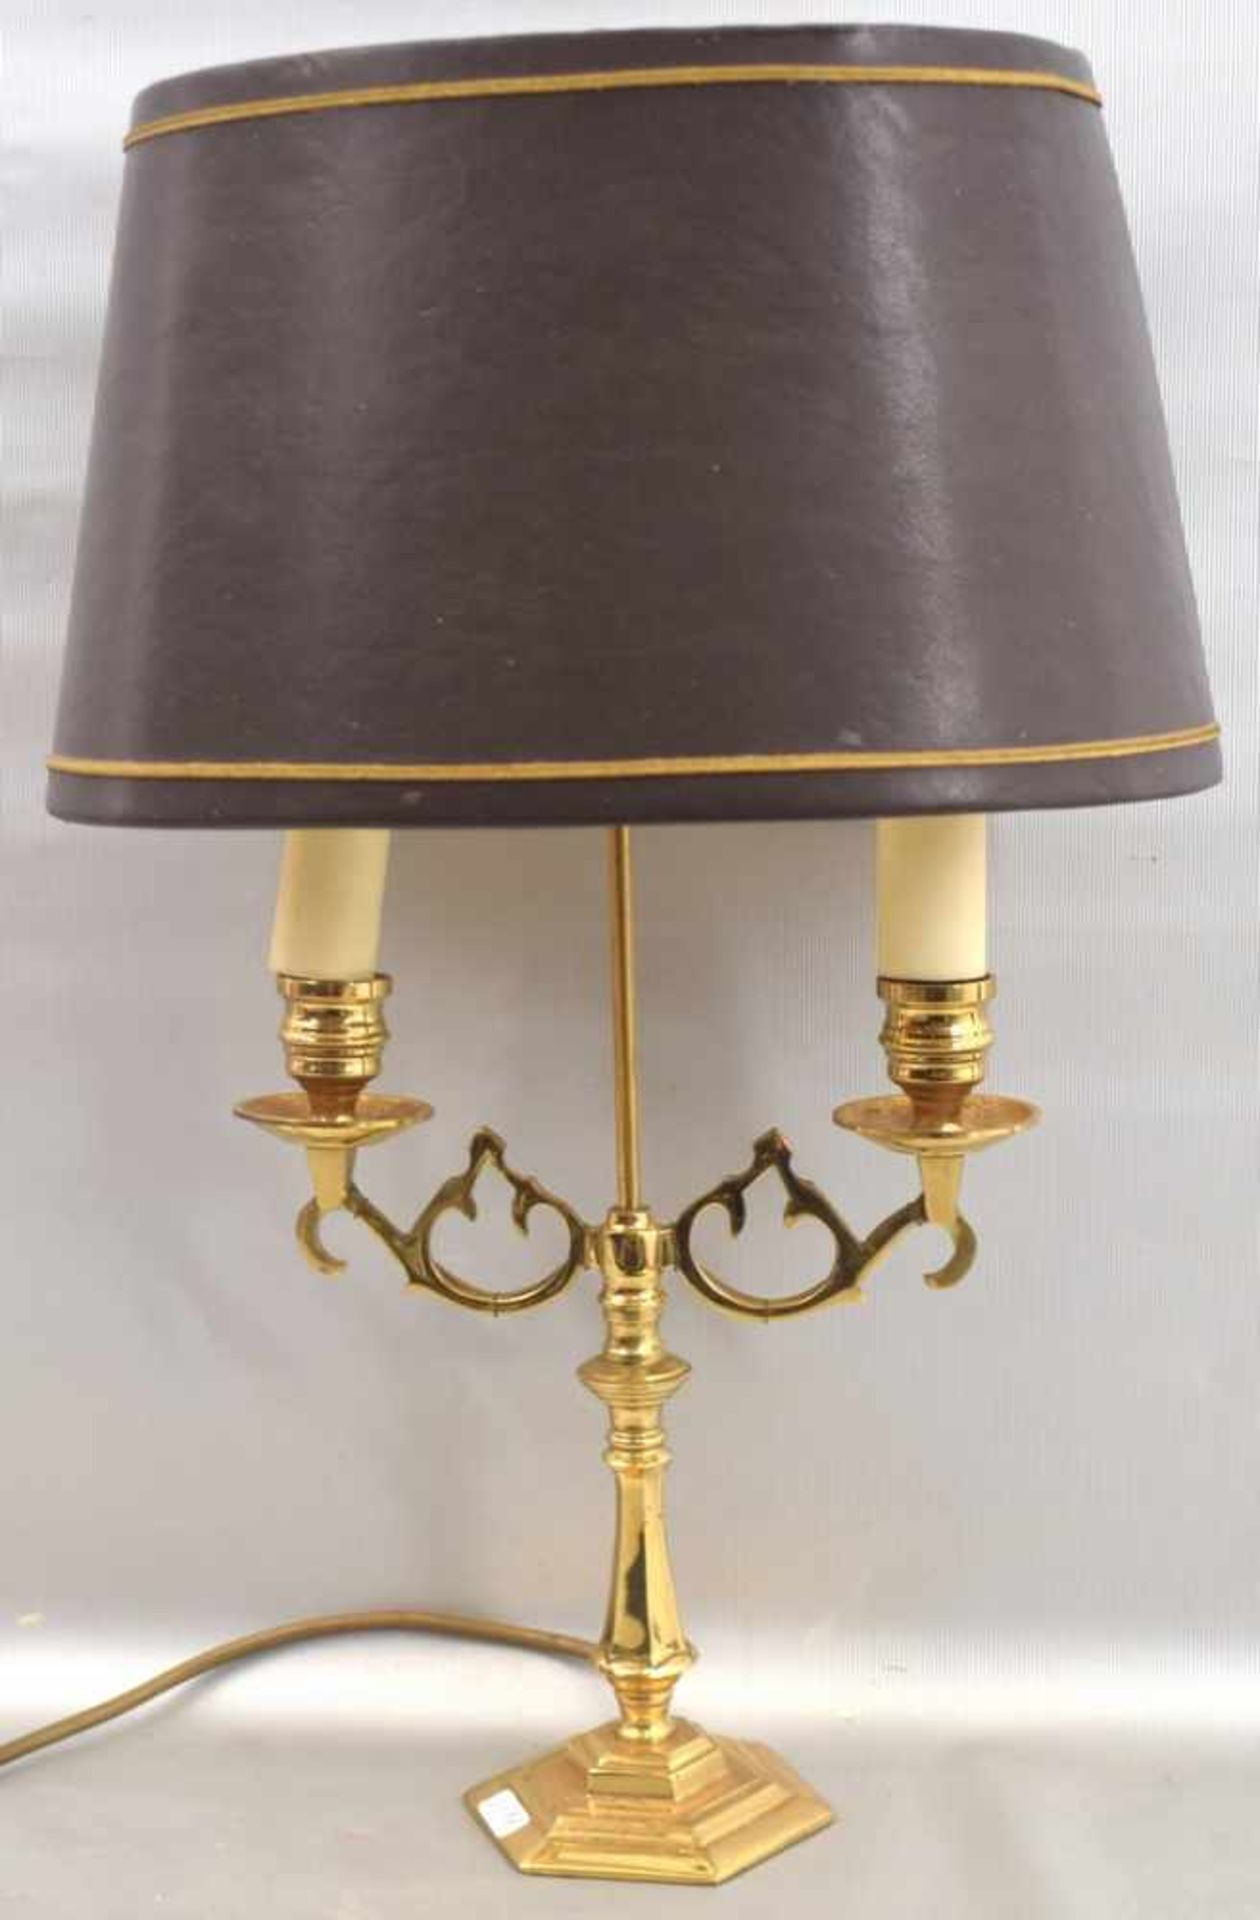 Tischlampe2-lichtig, Messing, sechseckiger Fuß, zwei verzierte Arme, ovaler brauner Schirm, H 45 cm